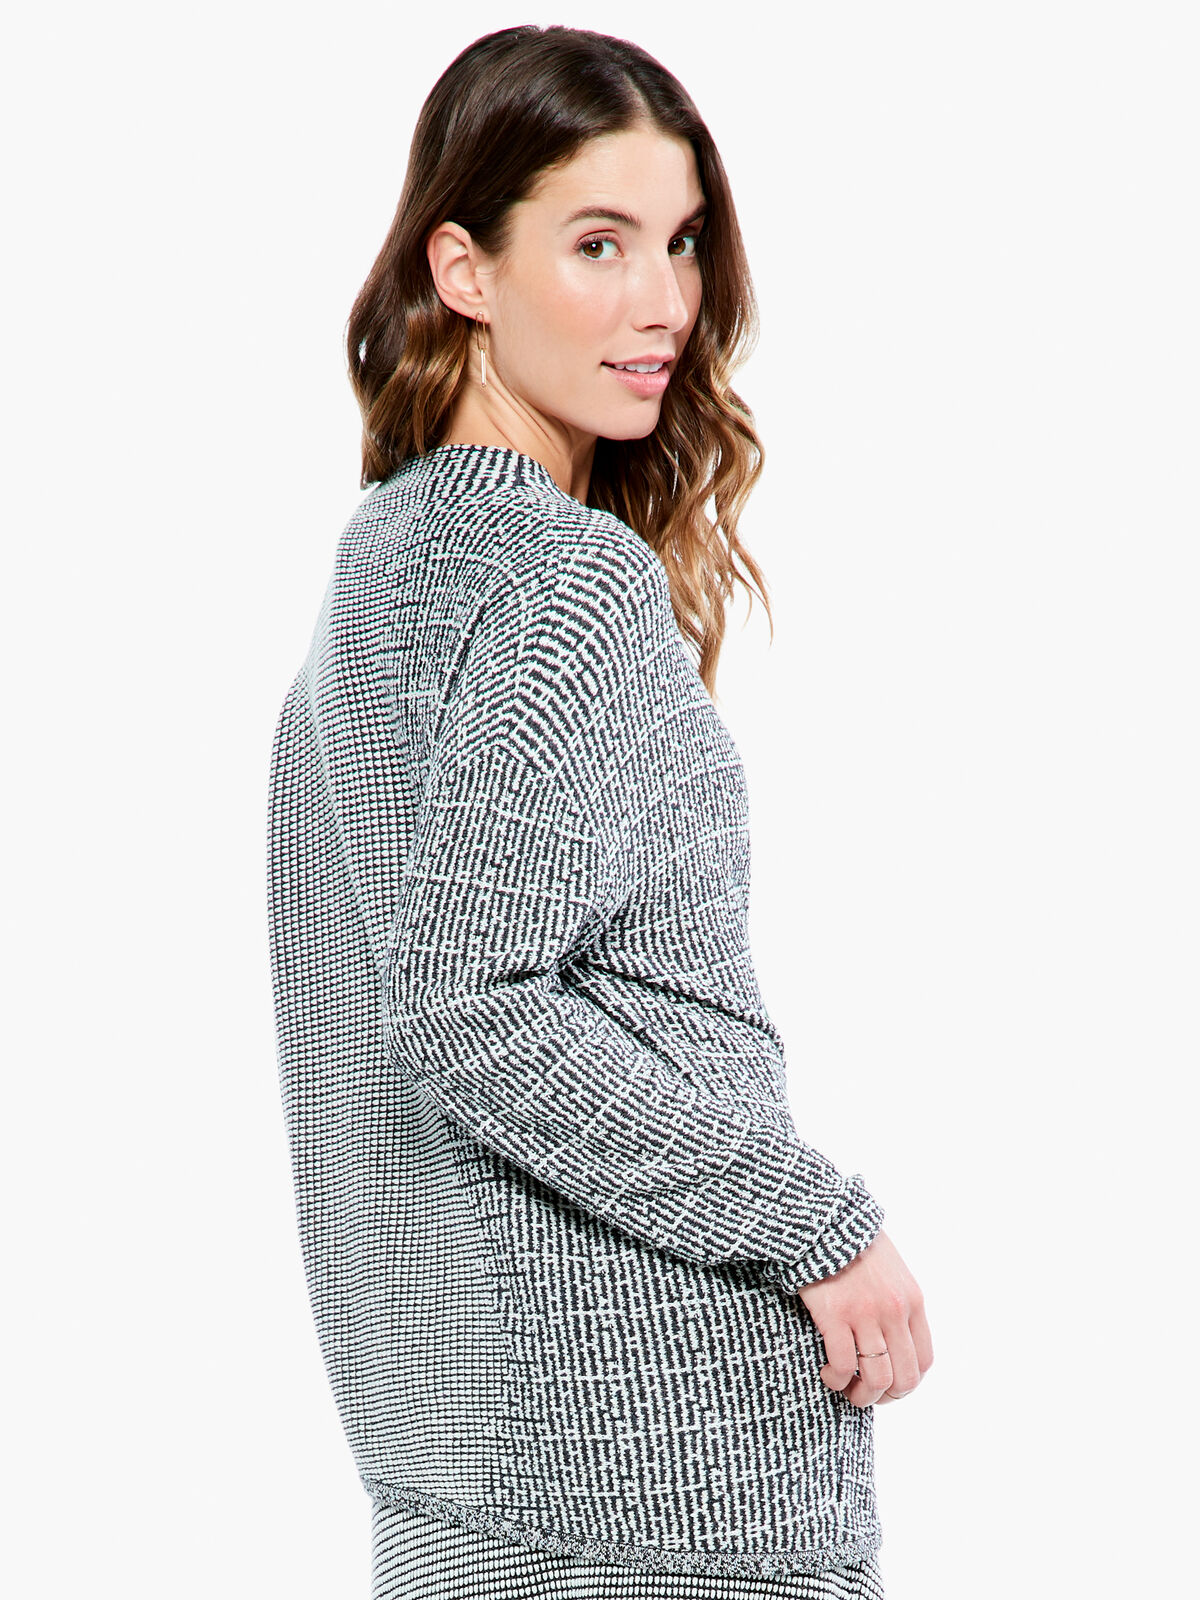 Pixel Knit Sweater